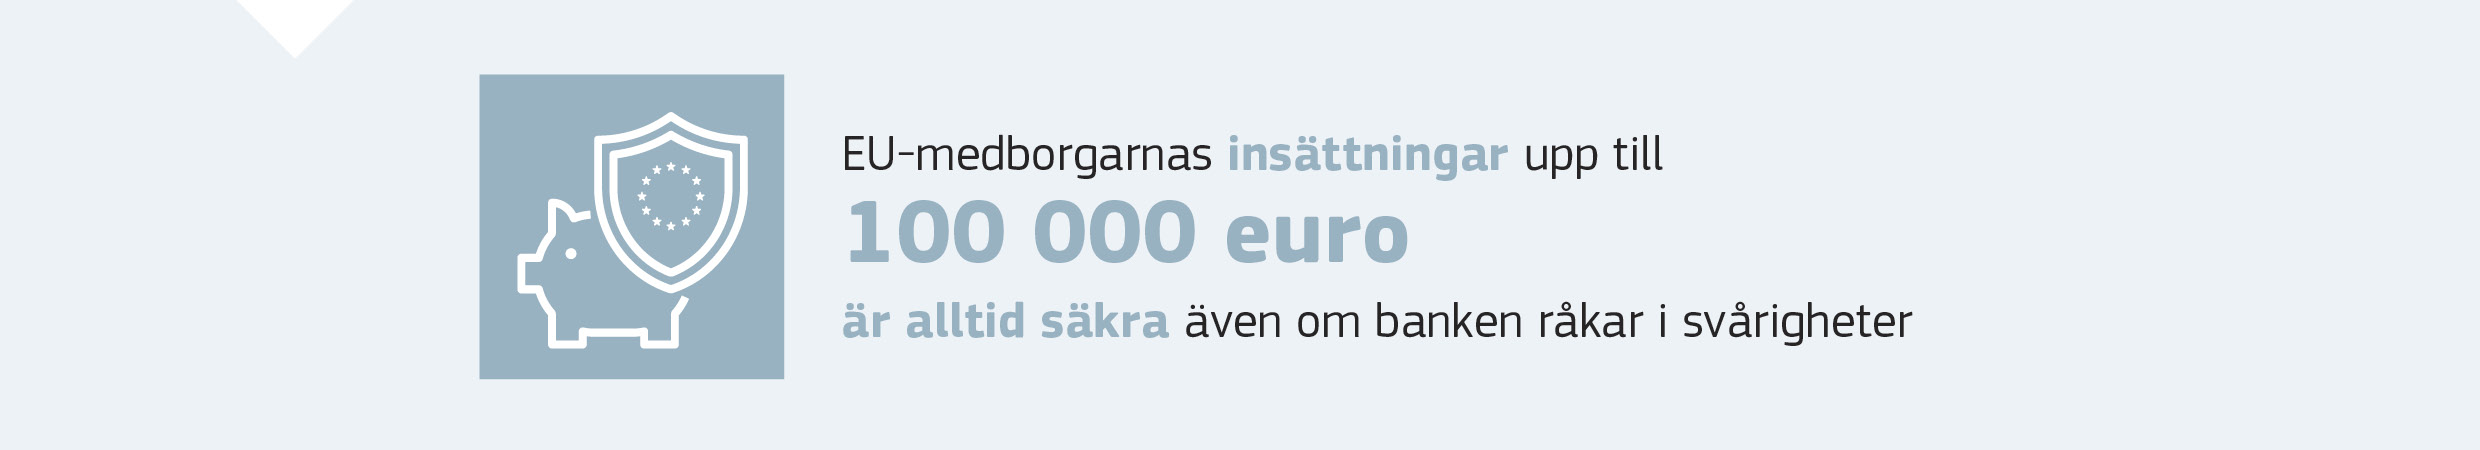 EU-medborgarnas insättningar upp till 100 000 euro är alltid säkra även om banken råkar i svårigheter